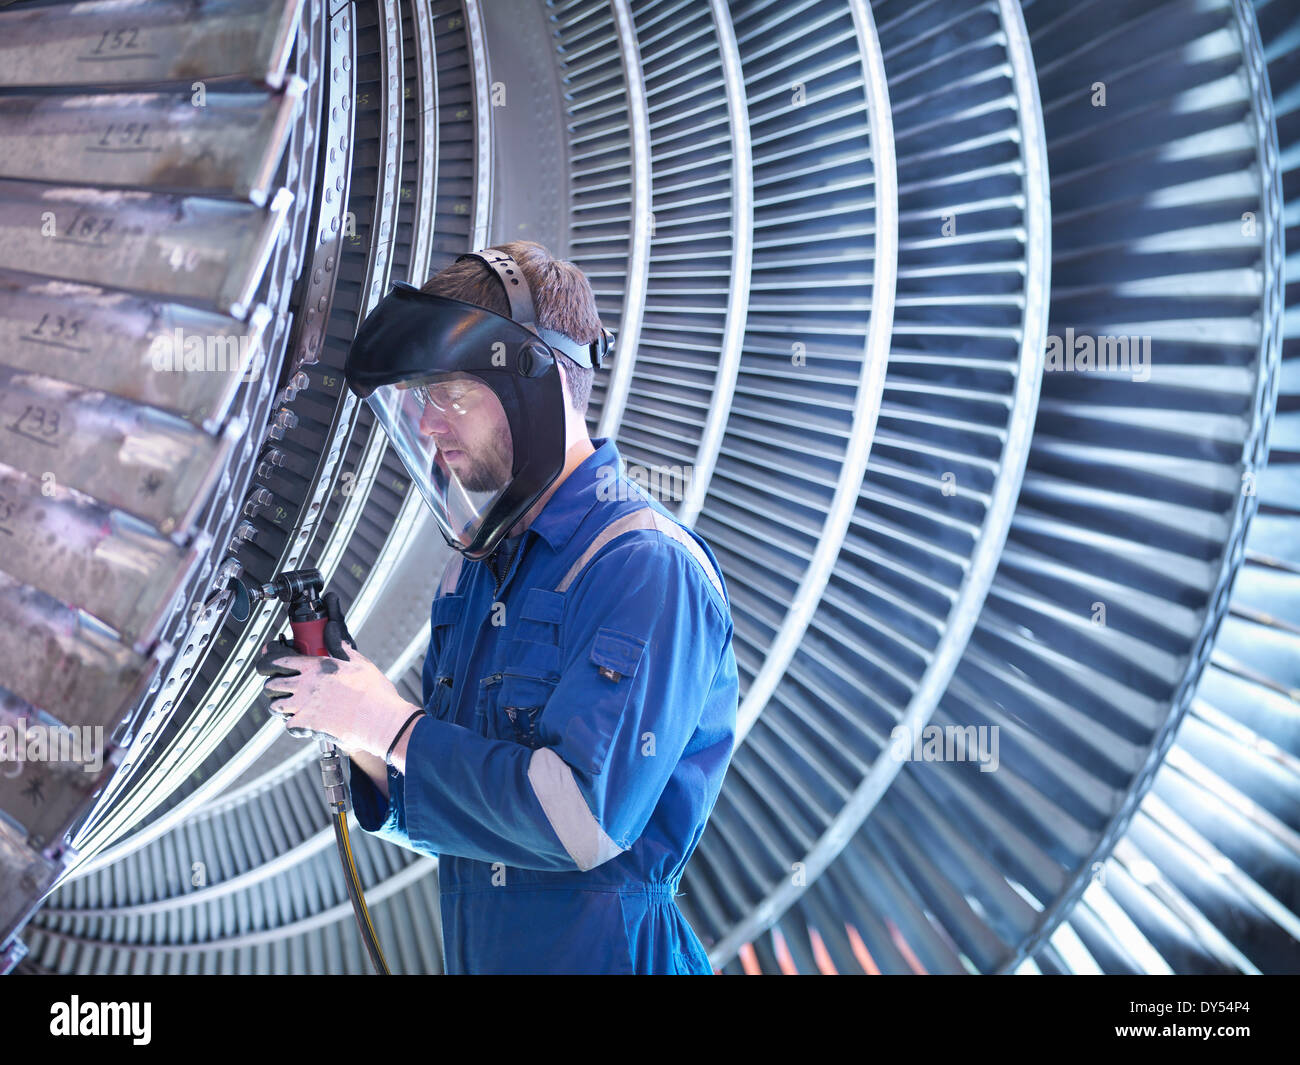 Engineer repairing steam turbine blade with grinder in workshop Stock Photo